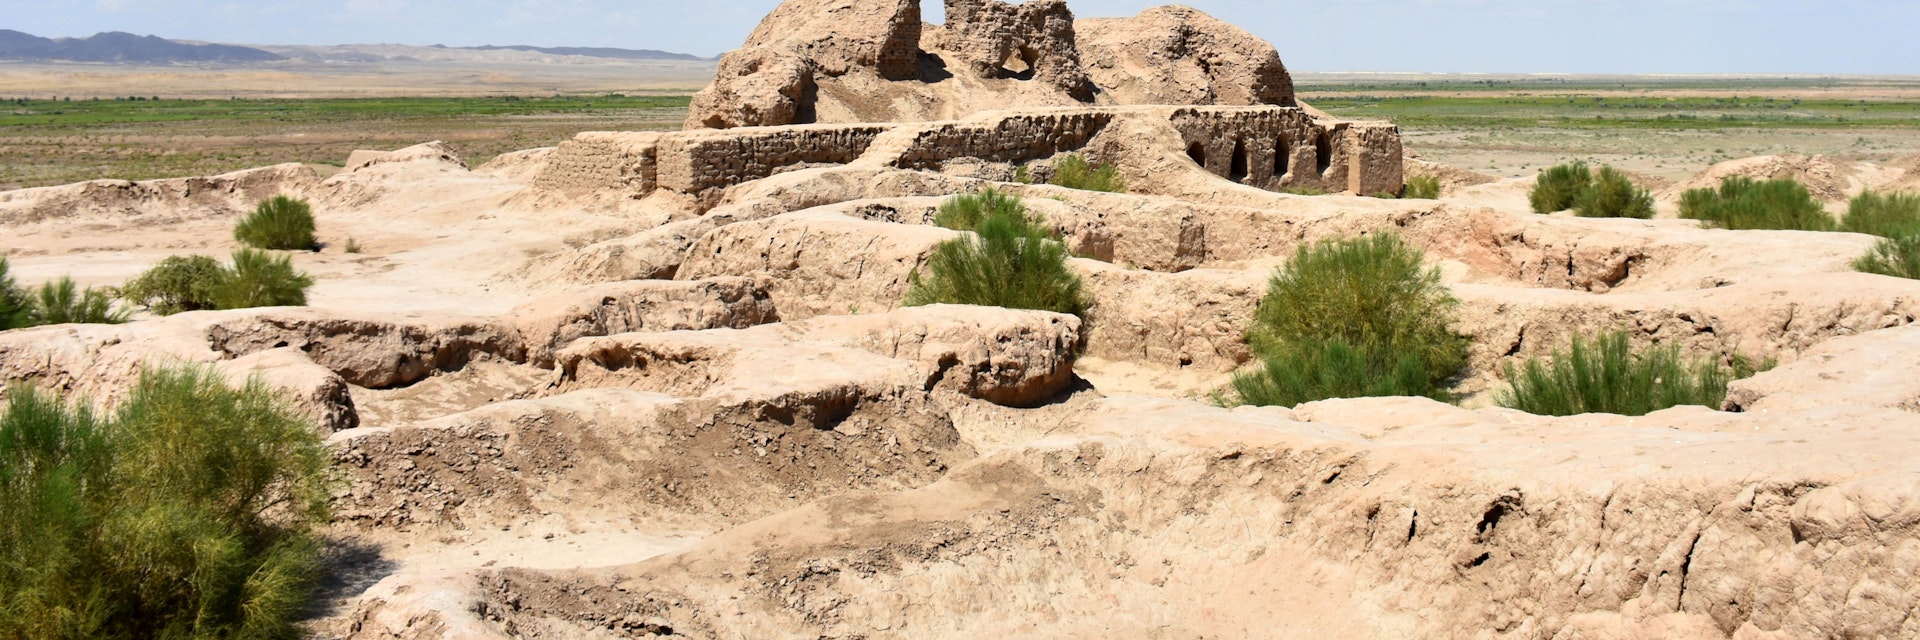 Ruins of the Toprak Qala fort in Uzbekistan.
